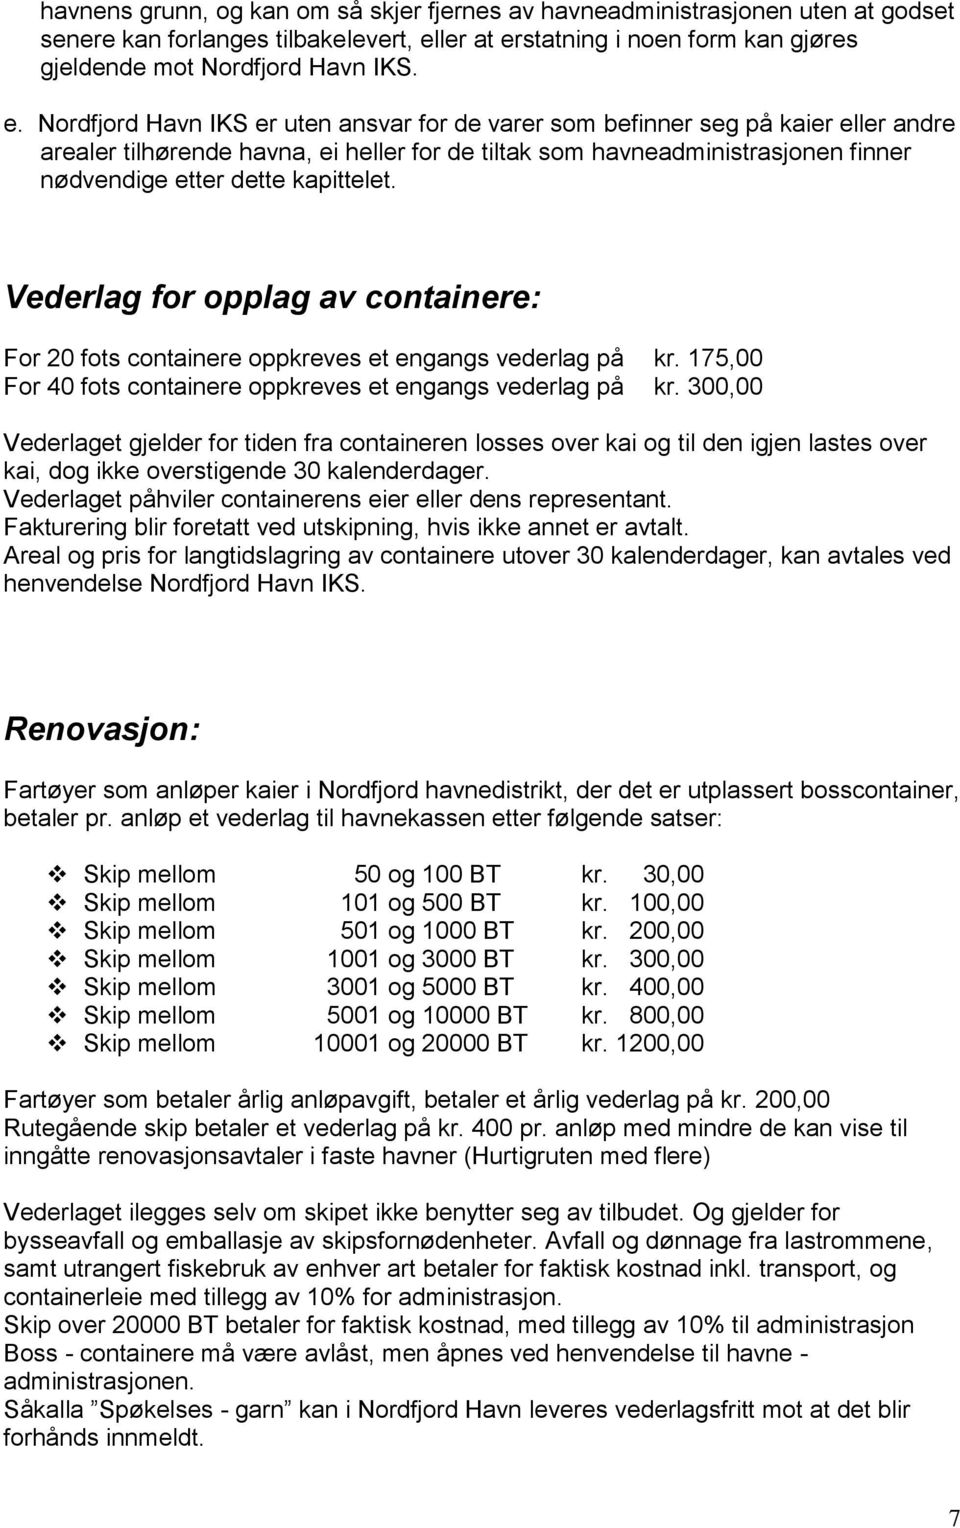 statning i noen form kan gjøres gjeldende mot Nordfjord Havn IKS. e.